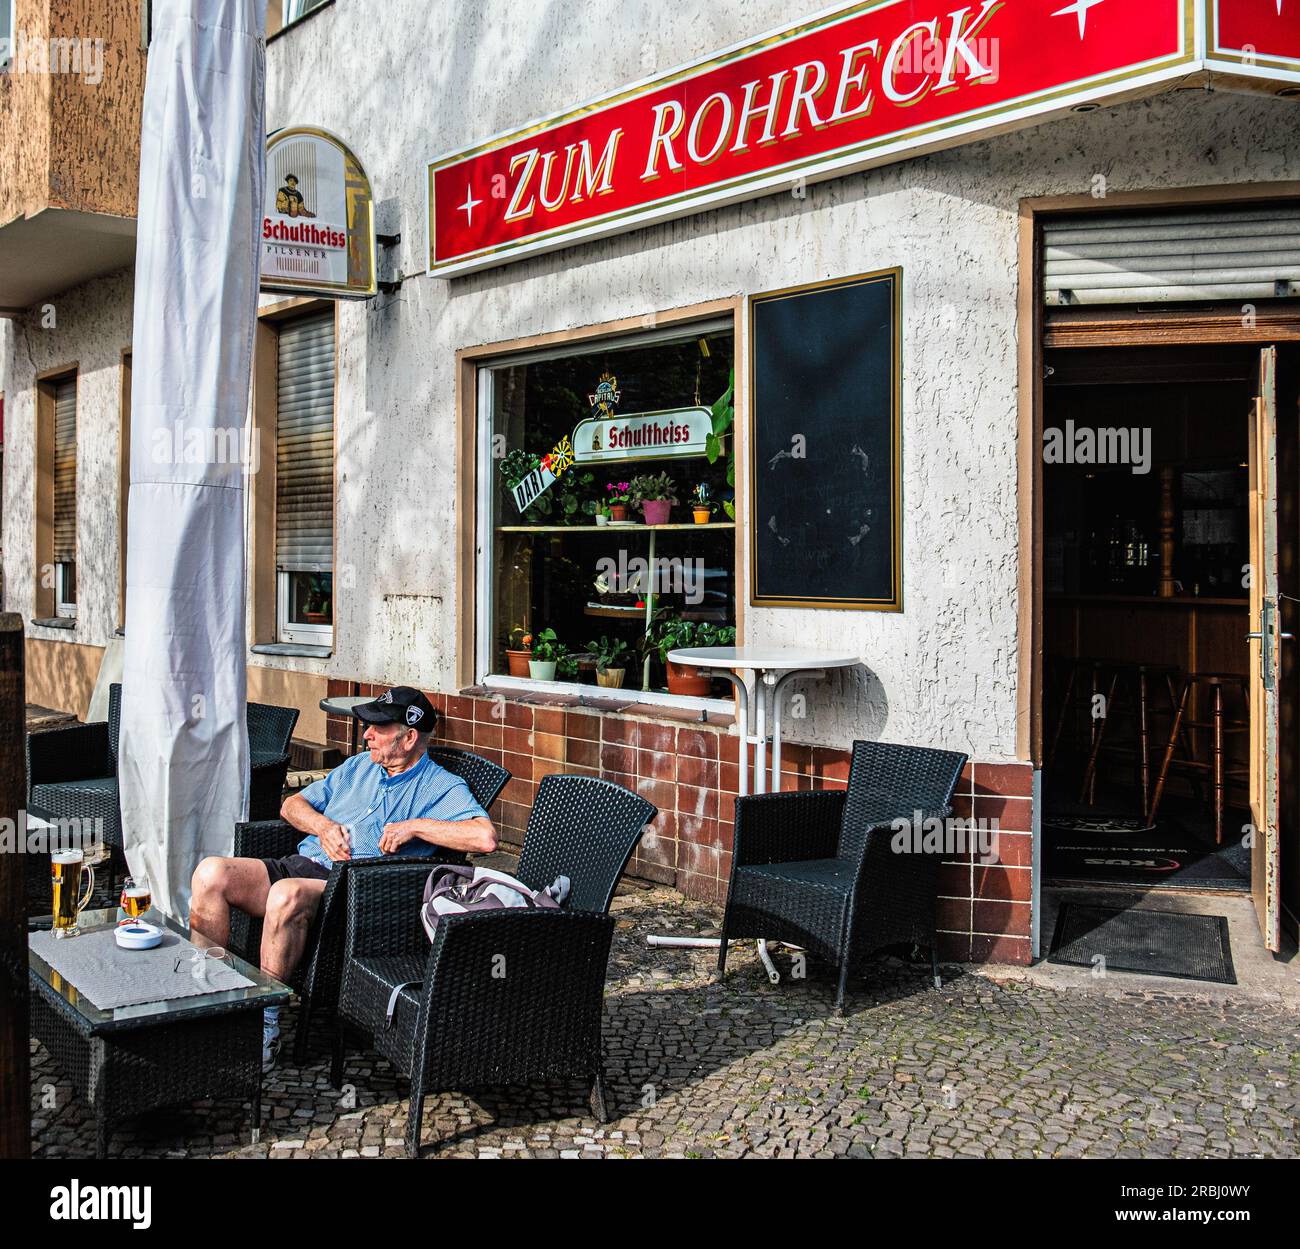 Zum Rohreck, traditioneller alter Pub, Jungfernsteig 5, Spandau, Berlin Stockfoto